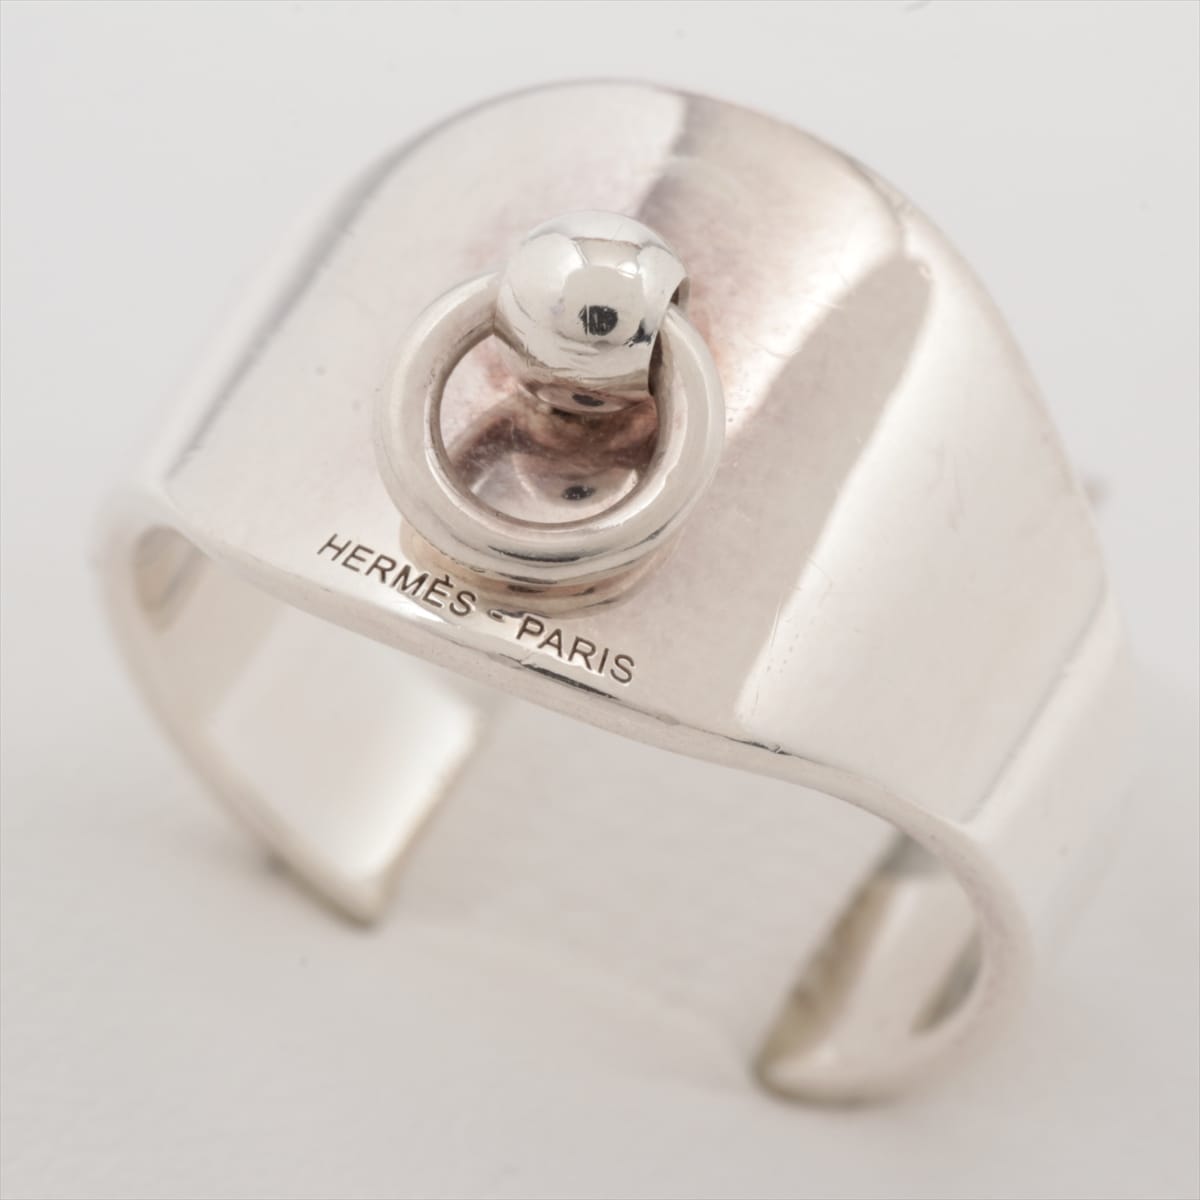 Hermès rings 925 5.1g Silver